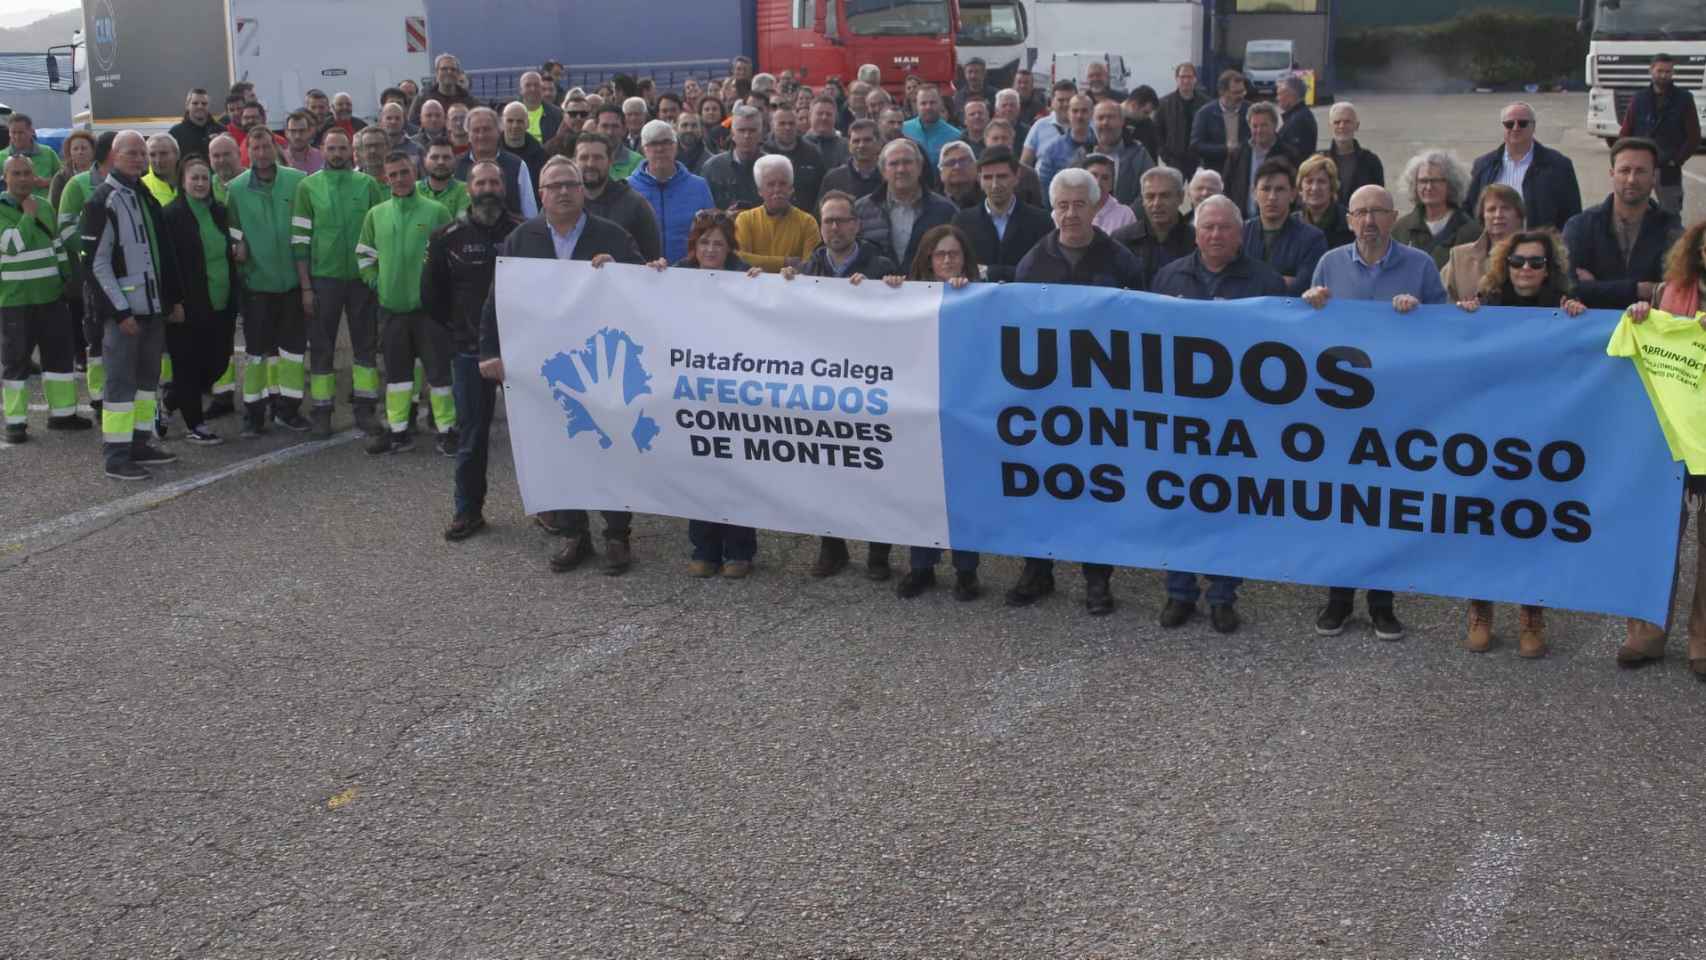 Plataforma Galega de Afectados polas Comunidades de Montes.